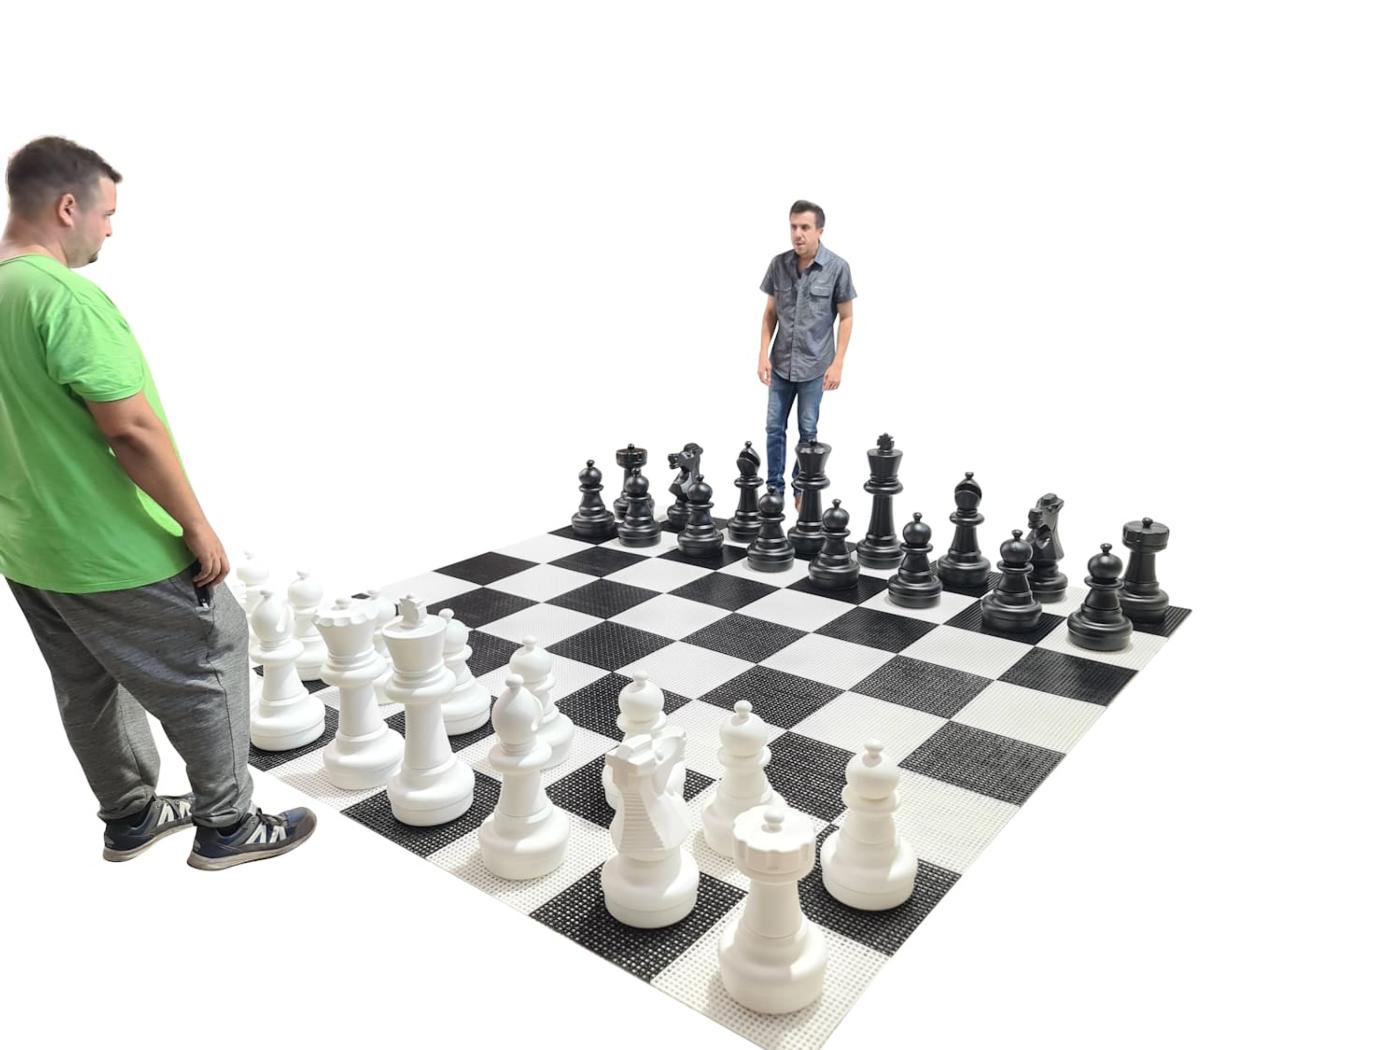 Joc d'escacs gegant amb tauler rígid gegant inclòs joc complet sobre tauler amb jugadors